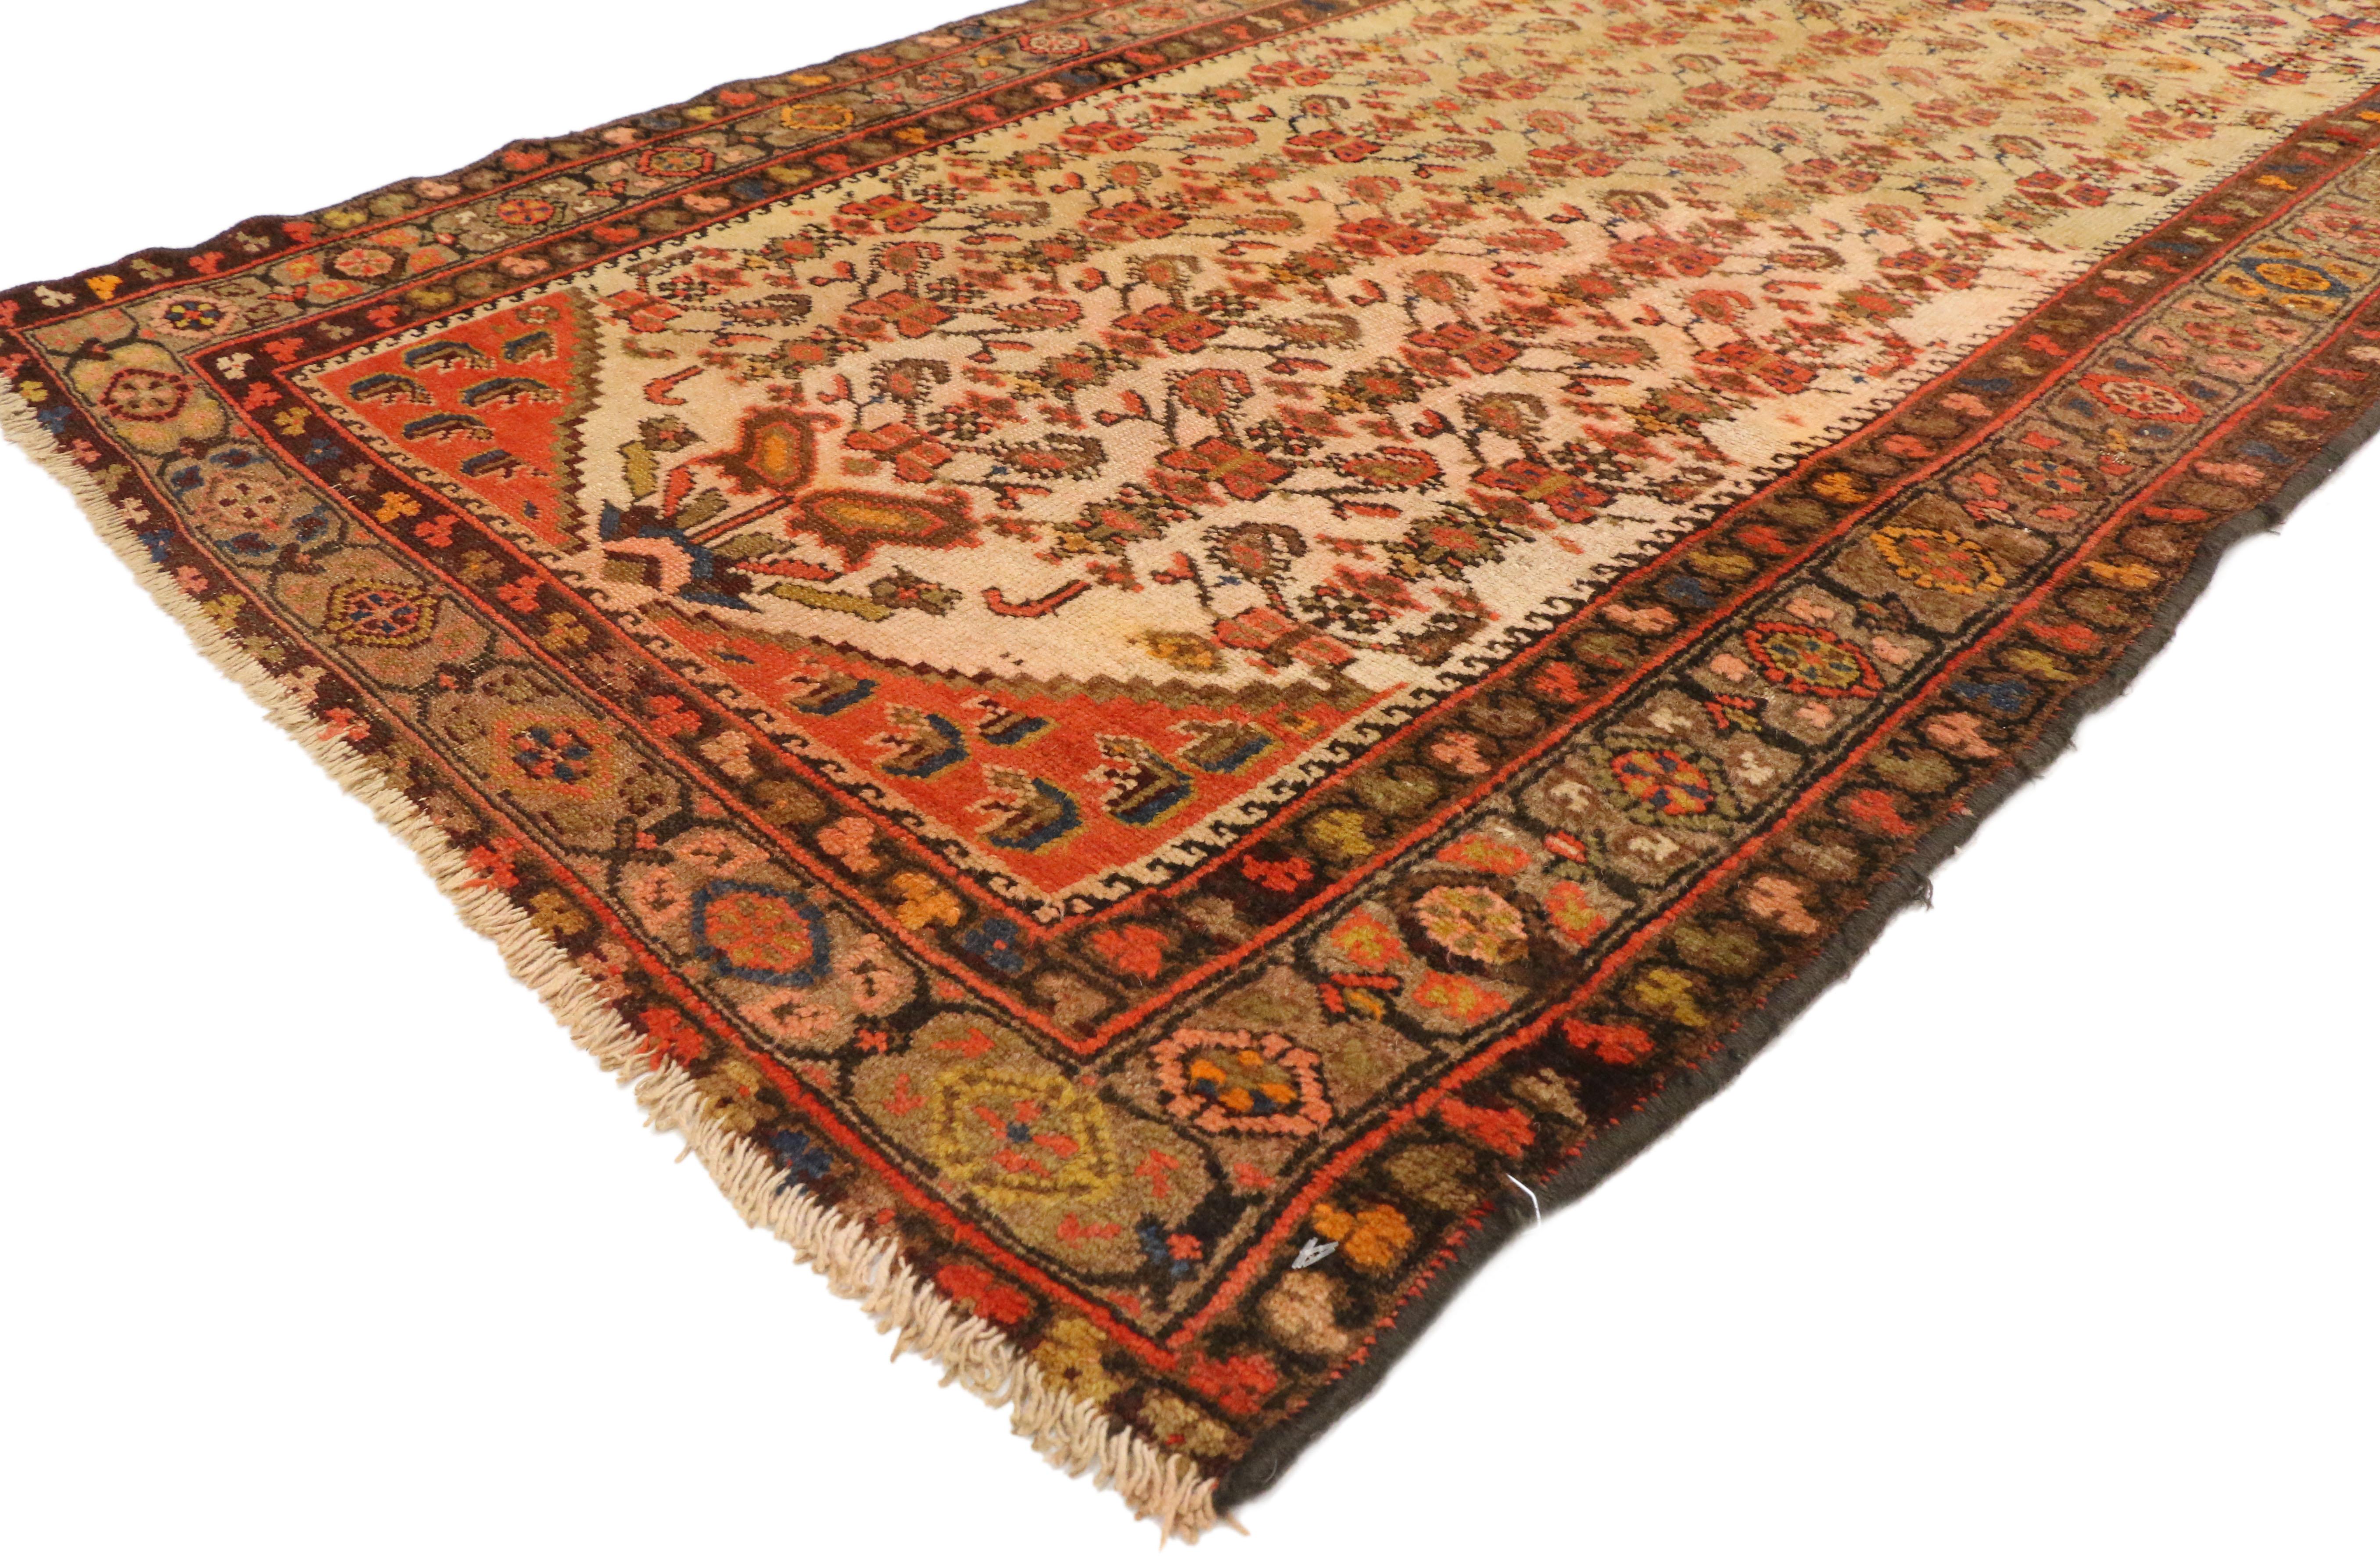 70740, Antique Persian Malayer Runner, Tapis de couloir. Ce chemin de table en laine Malayer antique, noué à la main, présente un motif boteh fleuri de style Qashqai, comme des papillons sur des tiges de plantes. Ce somptueux exemple de tissage